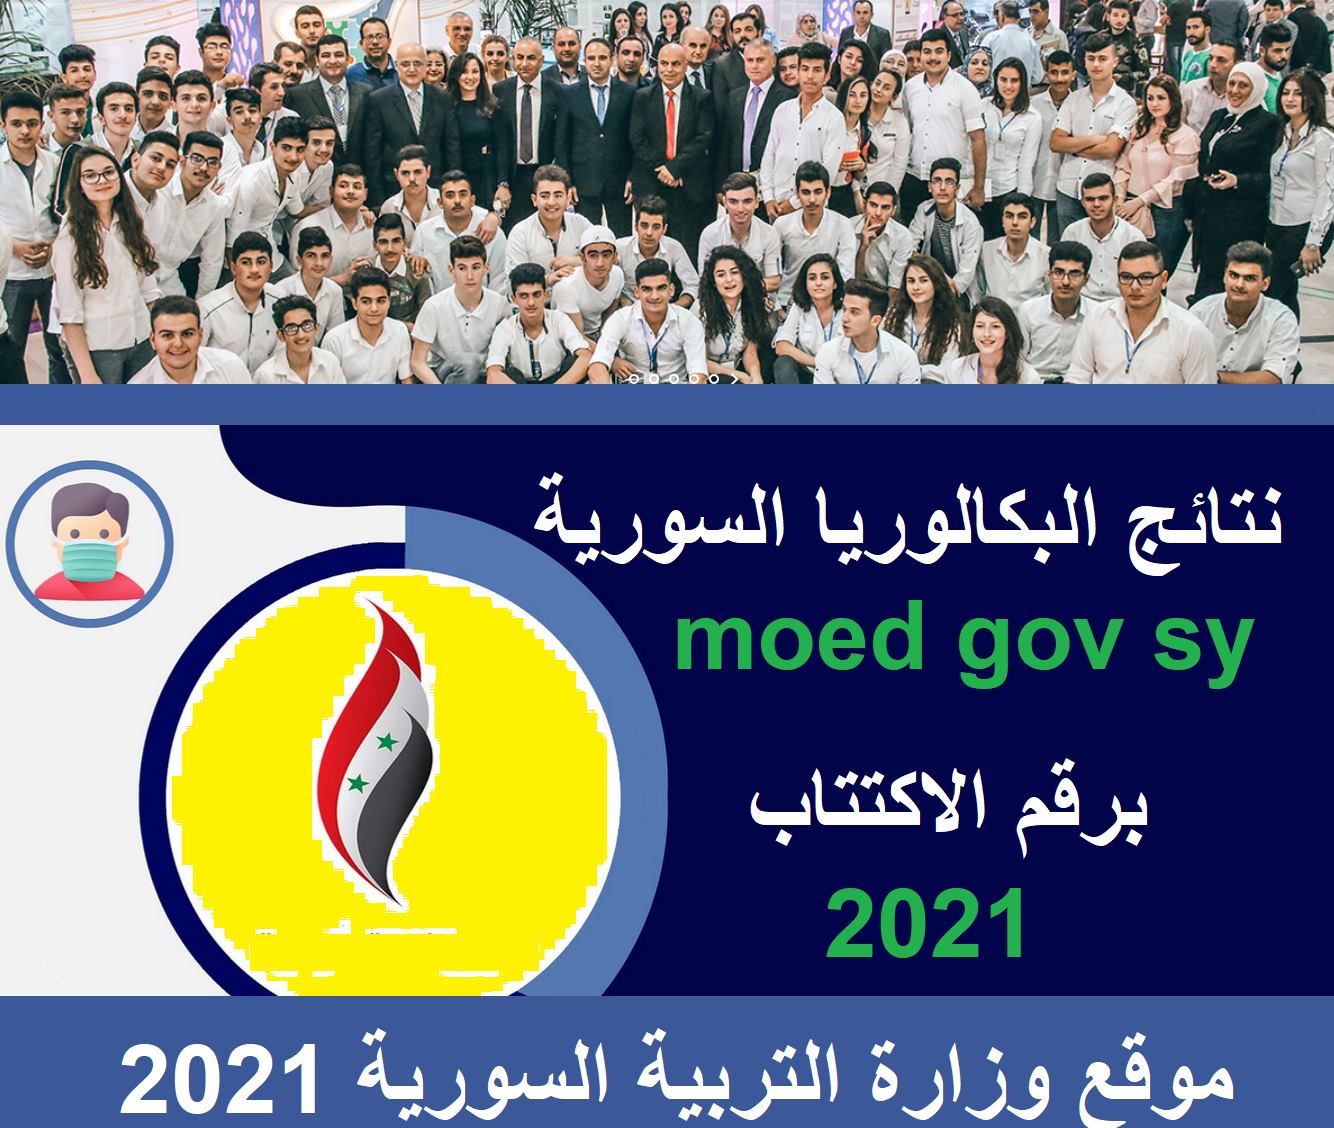 نتائج طلاب البكالوريا سوريا نتيجة التاسع السورية 2021 رابط وزارة التربية moed.gov.sy بالاسم